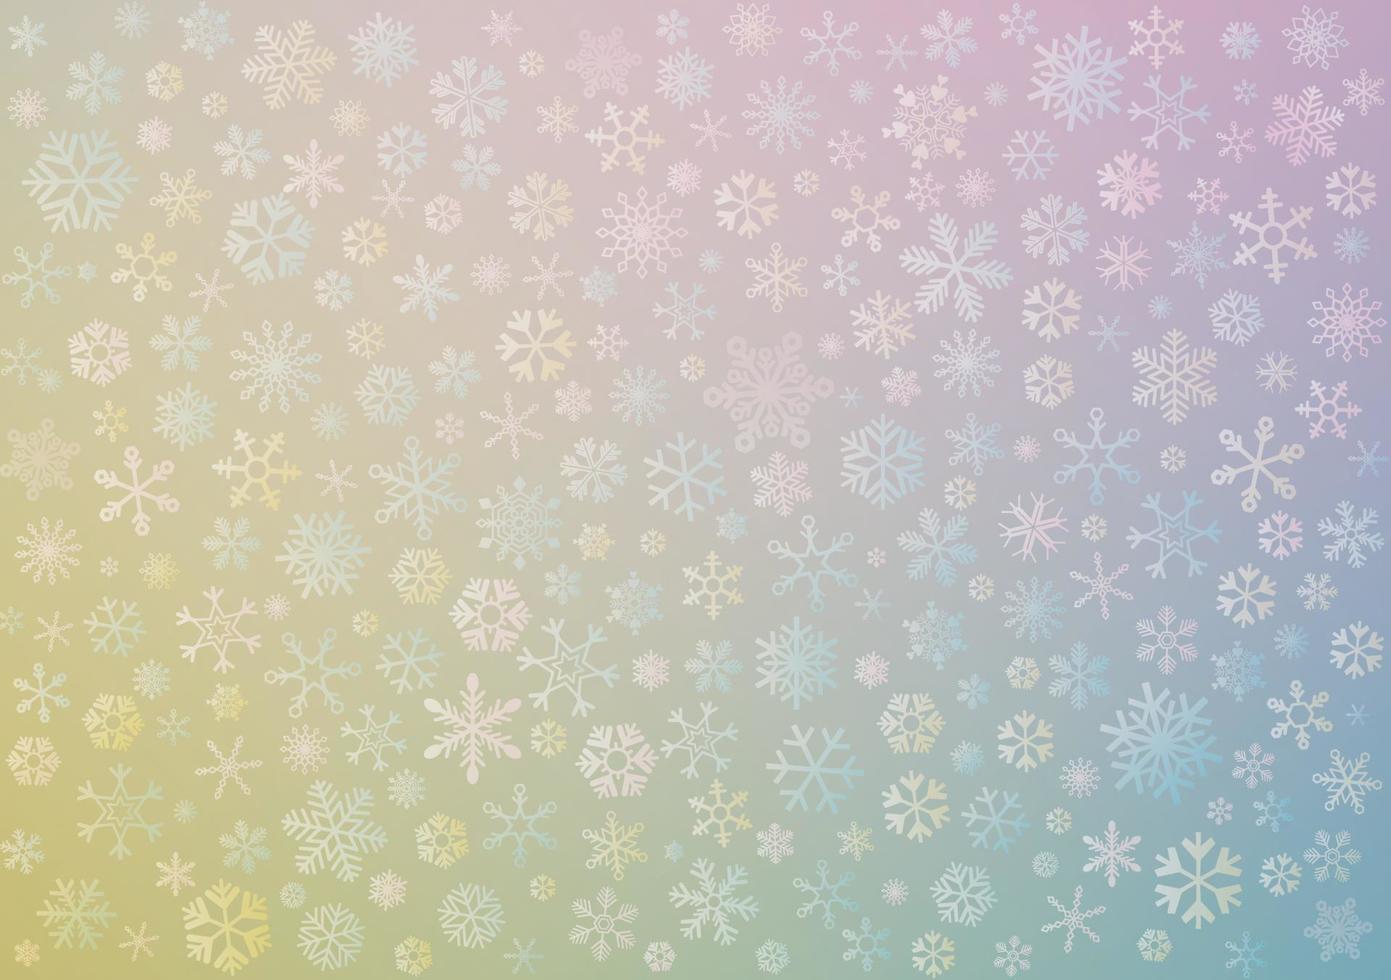 varios copos de nieve con fondo borroso de colores pastel. vector